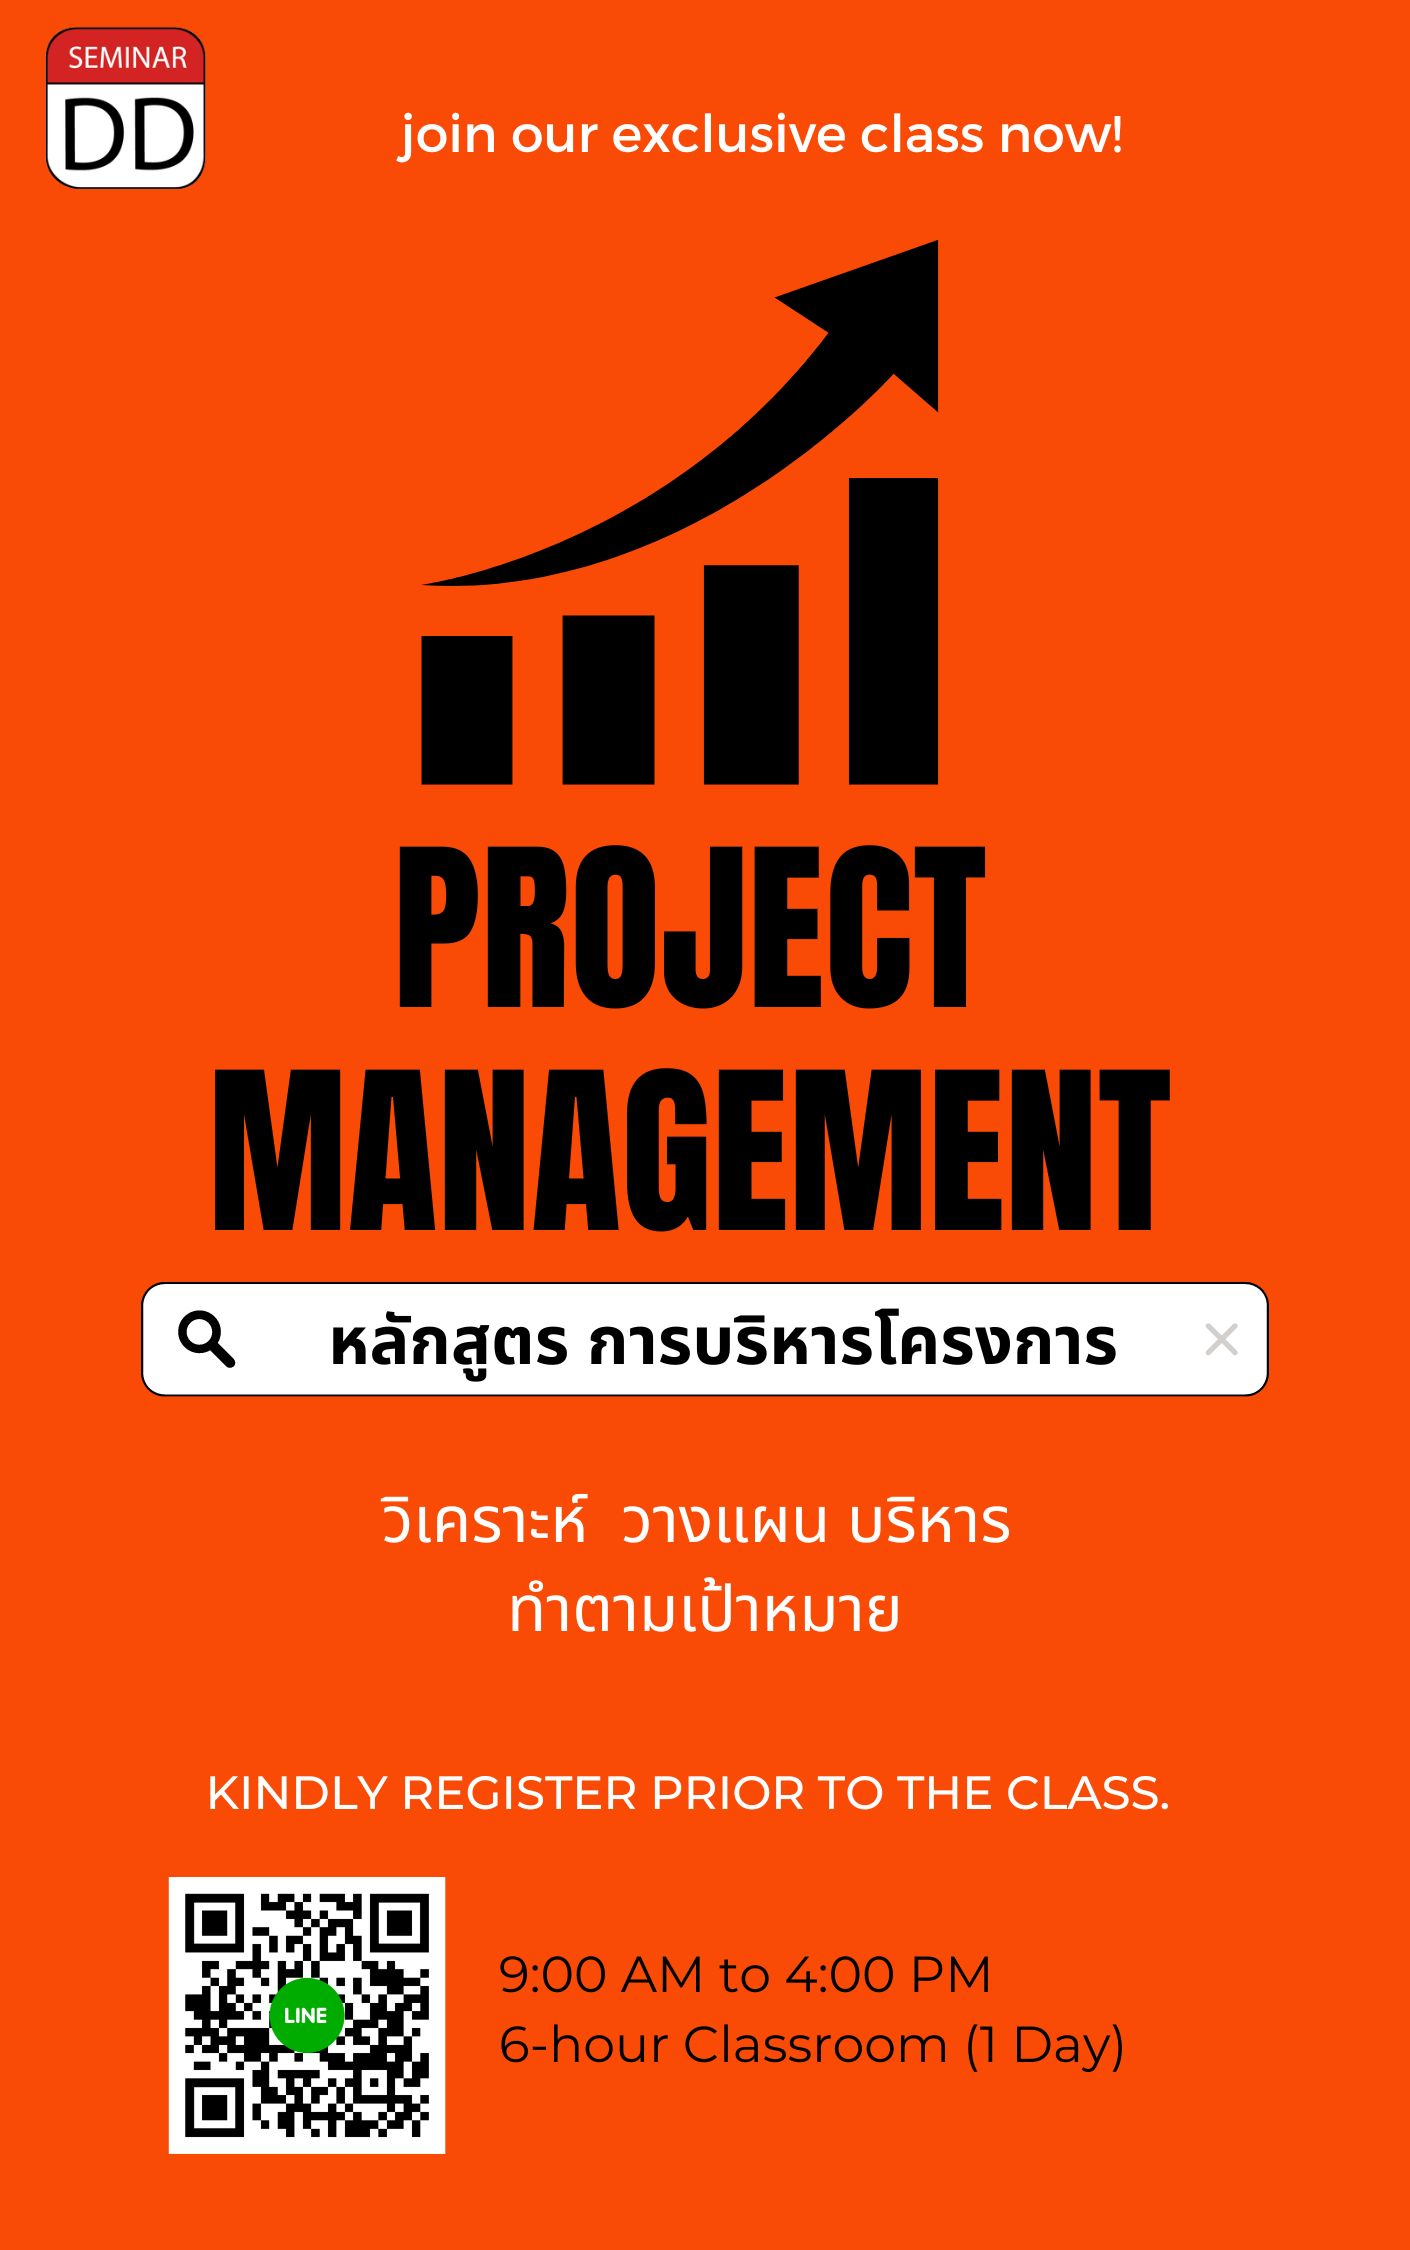 หลักสูตรอบรม หลักสูตรอบรม การบริหารโครงการ (Project Management)